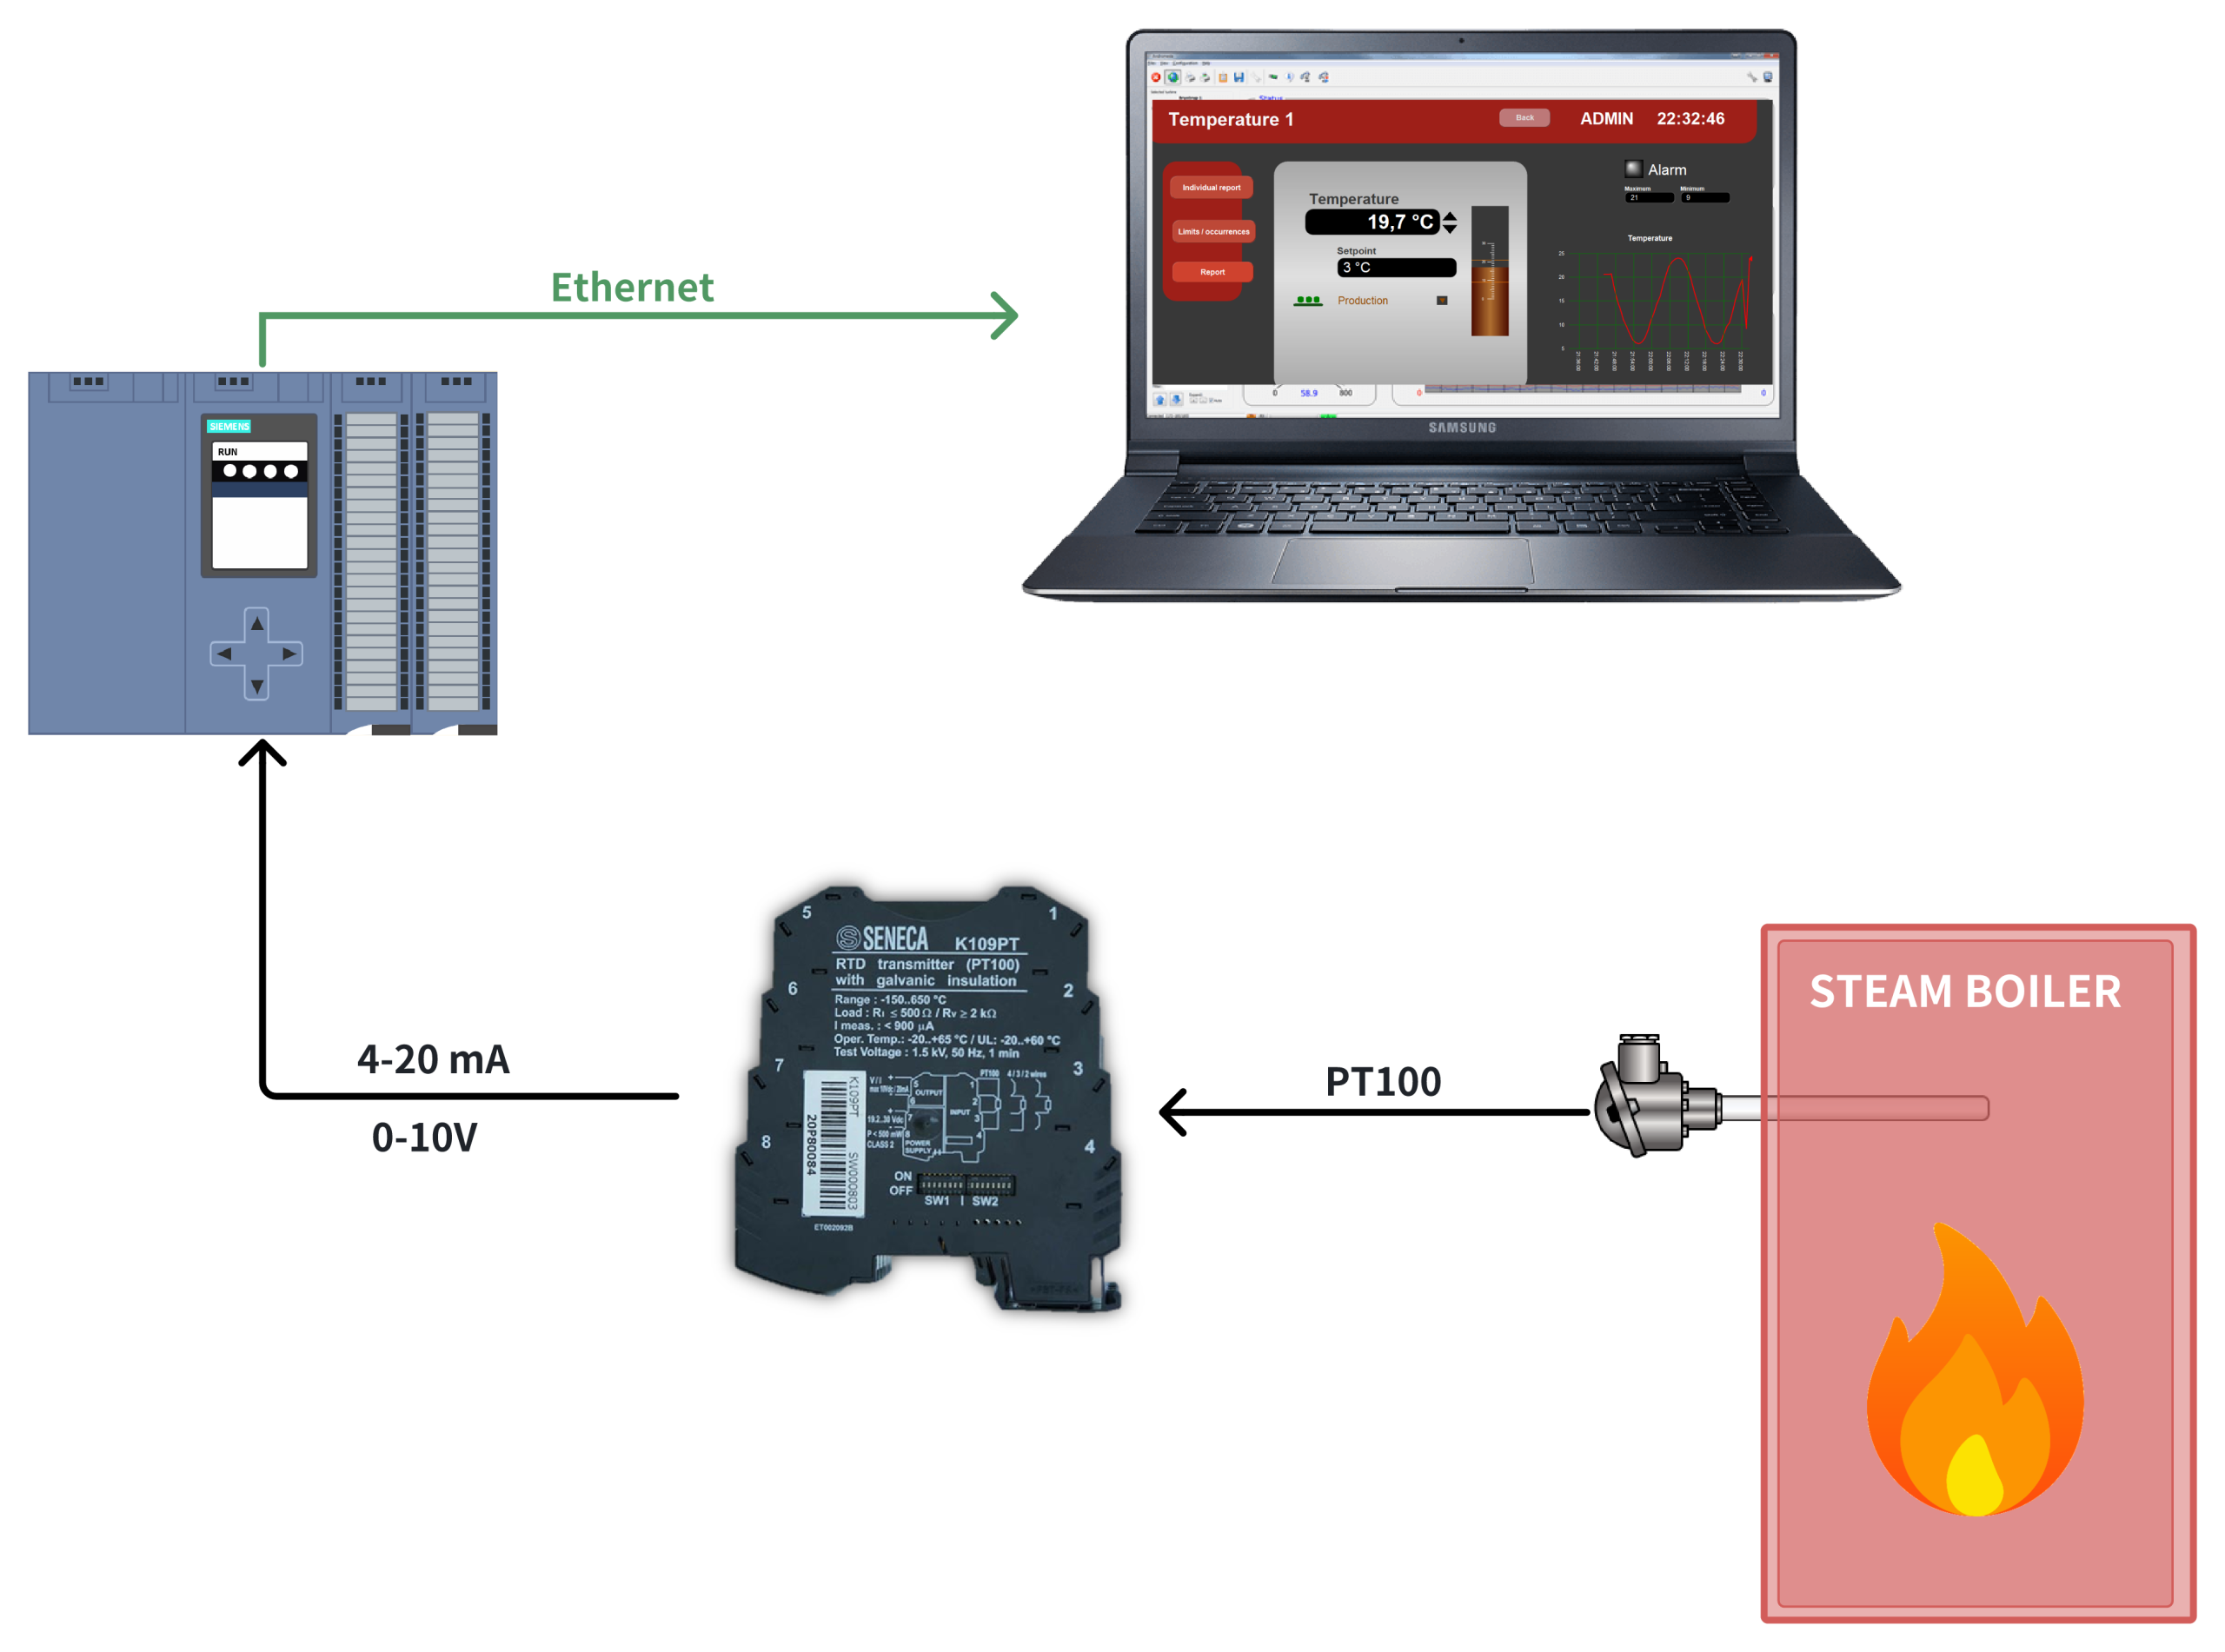 Ứng dụng hệ thống sử dụng thiết bị chuyển đổi tín hiệu K109PT